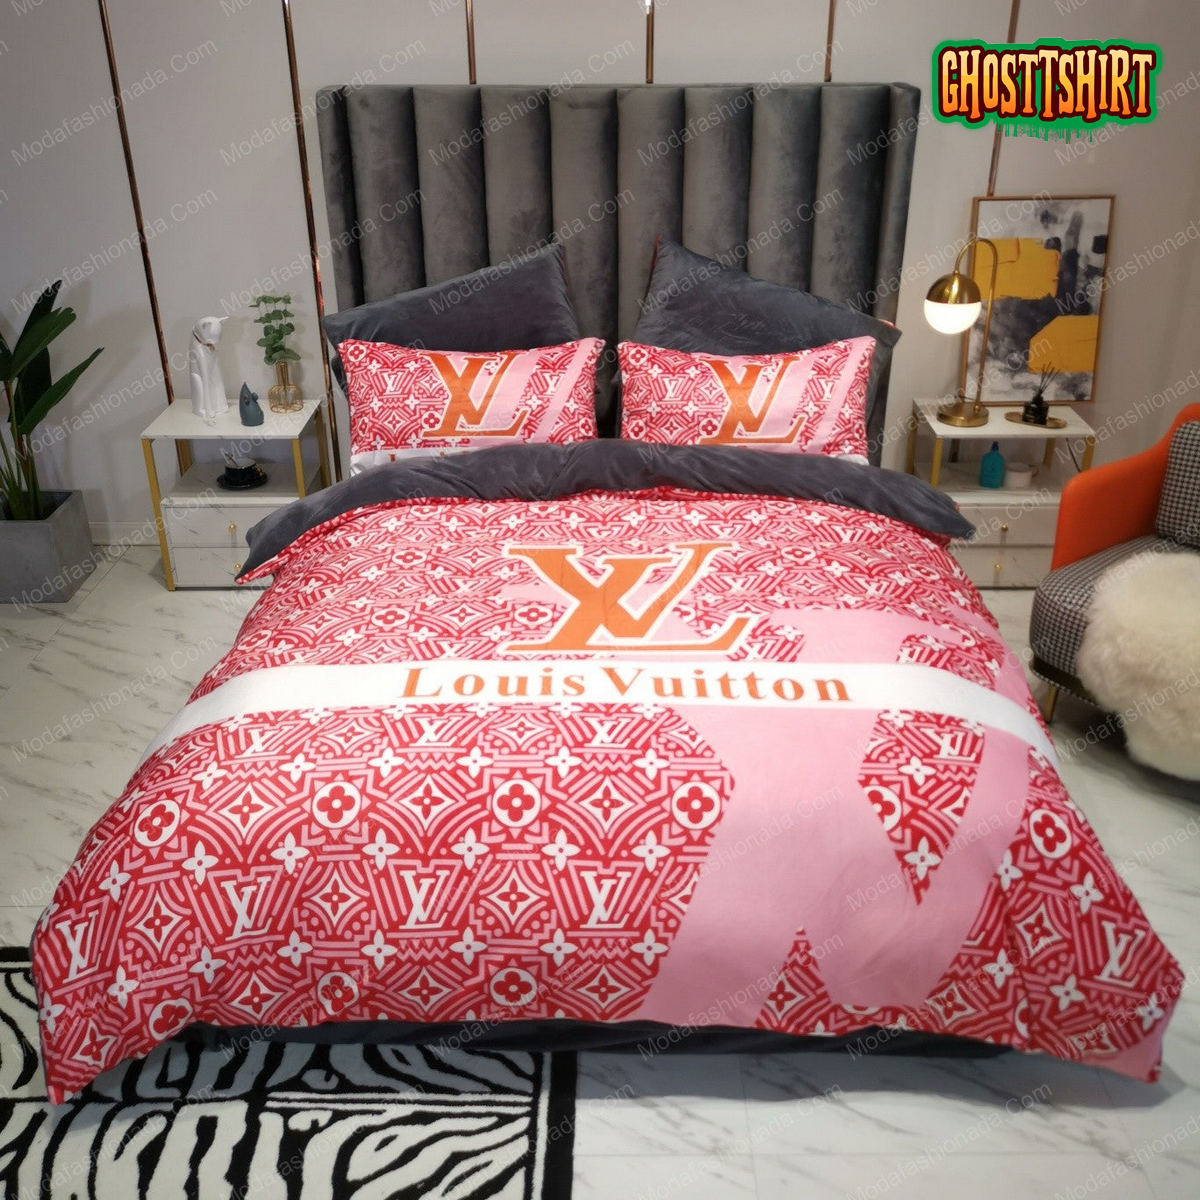 Buy Pink Veinstone Louis Vuitton Bedding Sets Bed Sets Bedroom Sets Comforter  Sets Duvet Cover Bedspread